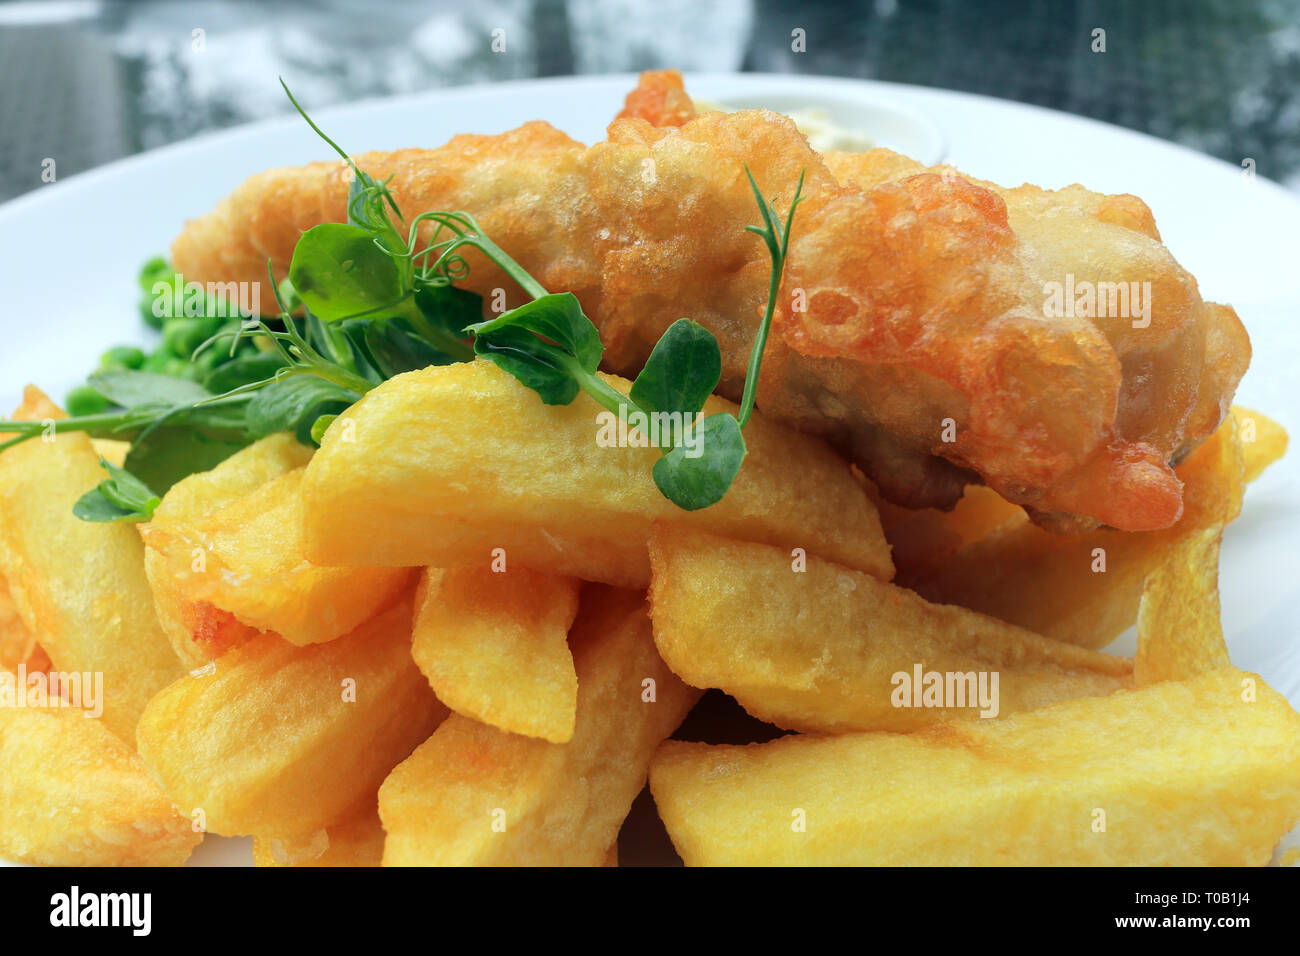 Traditionelle englische Küche von Cod Fish und Chips, garniert mit grünen, serviert auf einem weißen Teller. Stockfoto